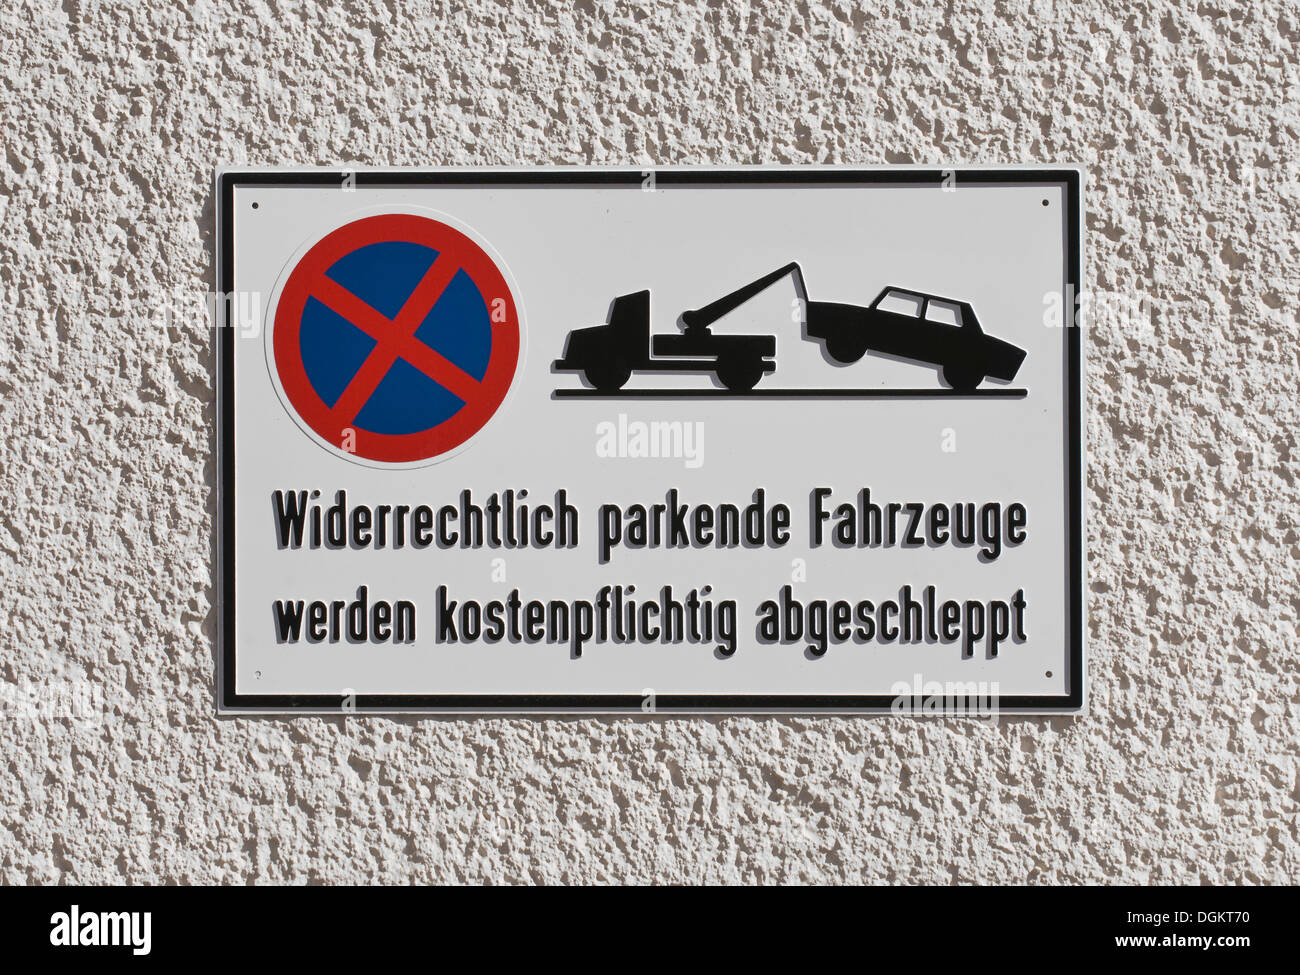 No hay aparcamiento señal indicando que "widerrechtlich geparkte Fahrzeuge werden kostenpflichtig abgeschleppt' para 'ilegalmente, alemán Foto de stock